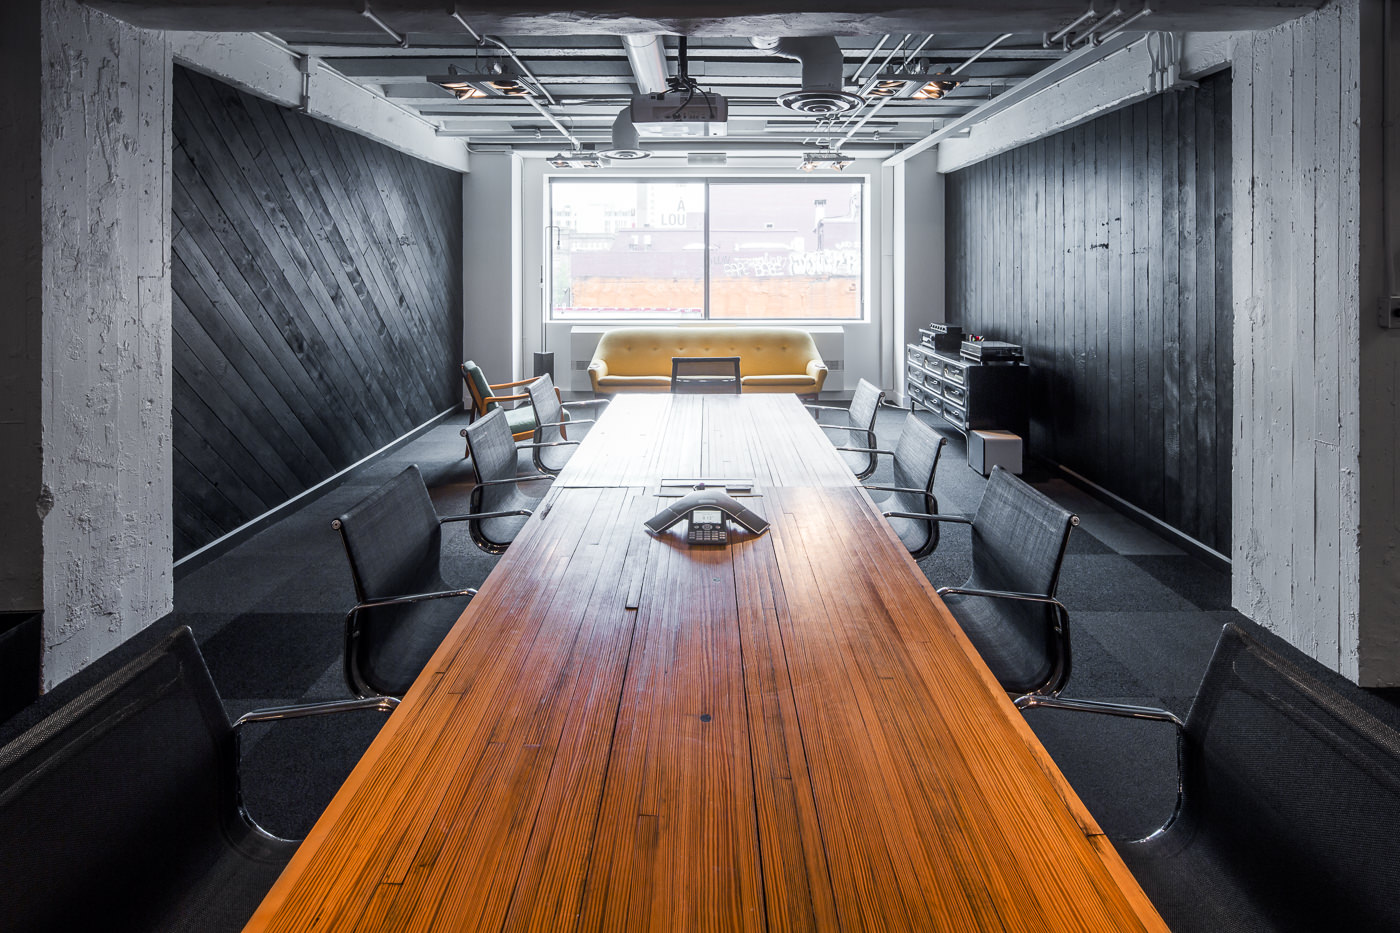 Salle de réunion dans les bureaux de havas montreal pour le forfait PME de thirdbridge